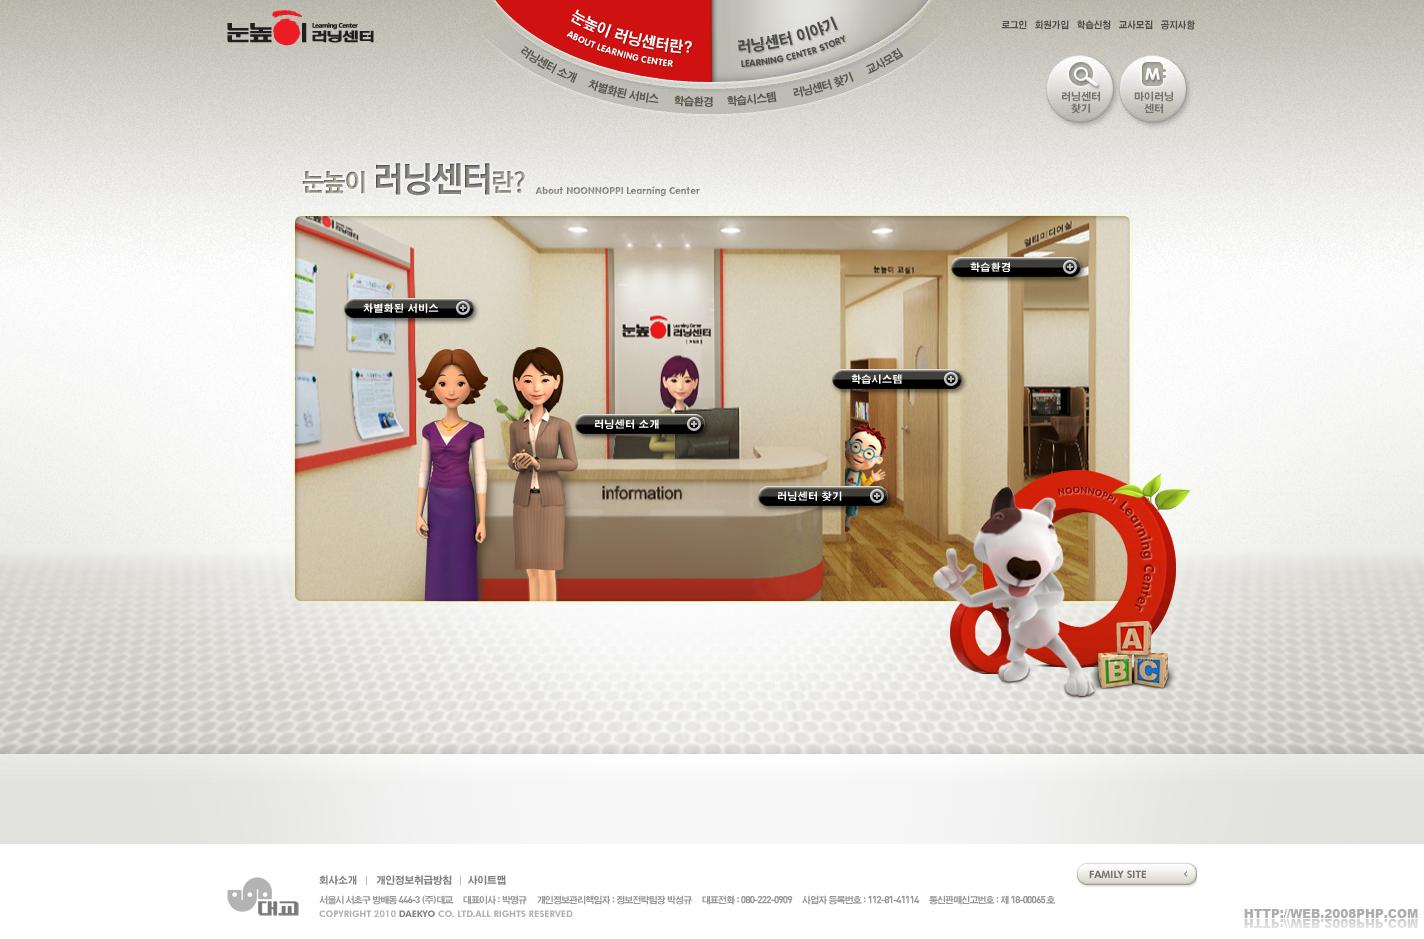 韩国眼科中心,近视治疗,康复水平